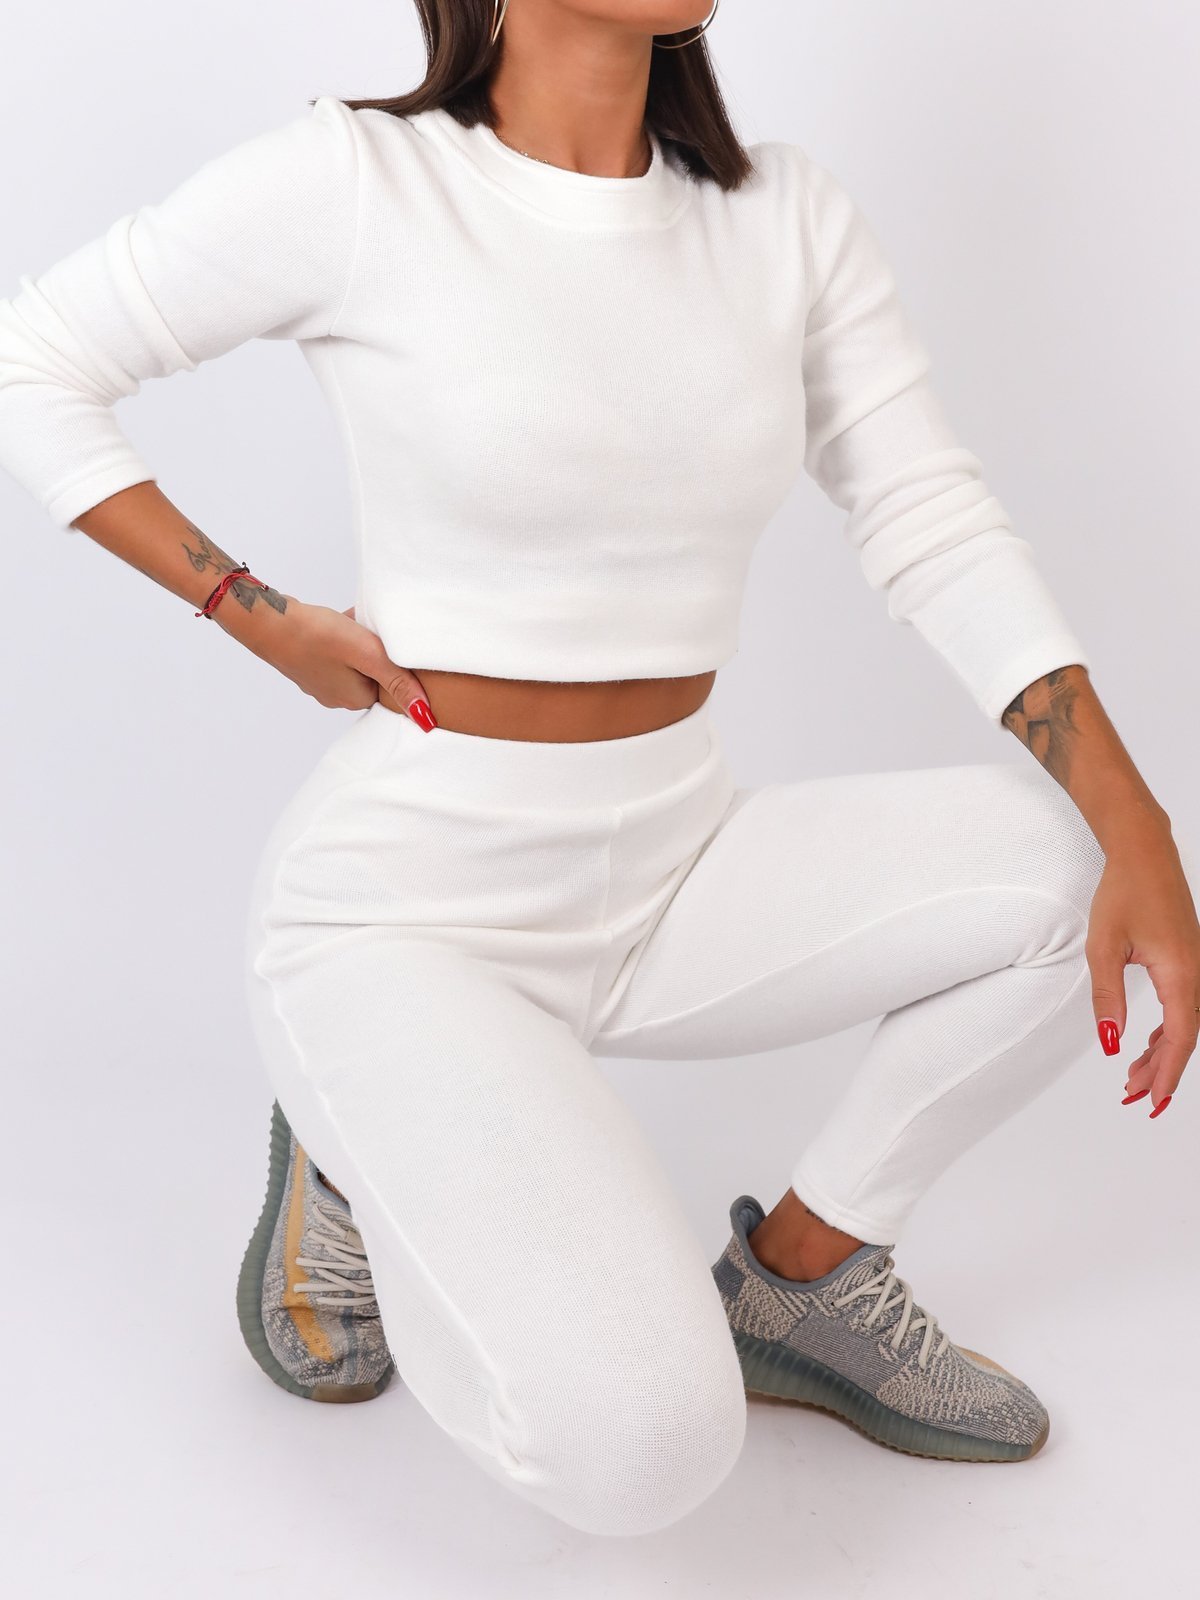 Dres swetrowy komplet krótki top+legginsy biały b20 kk01